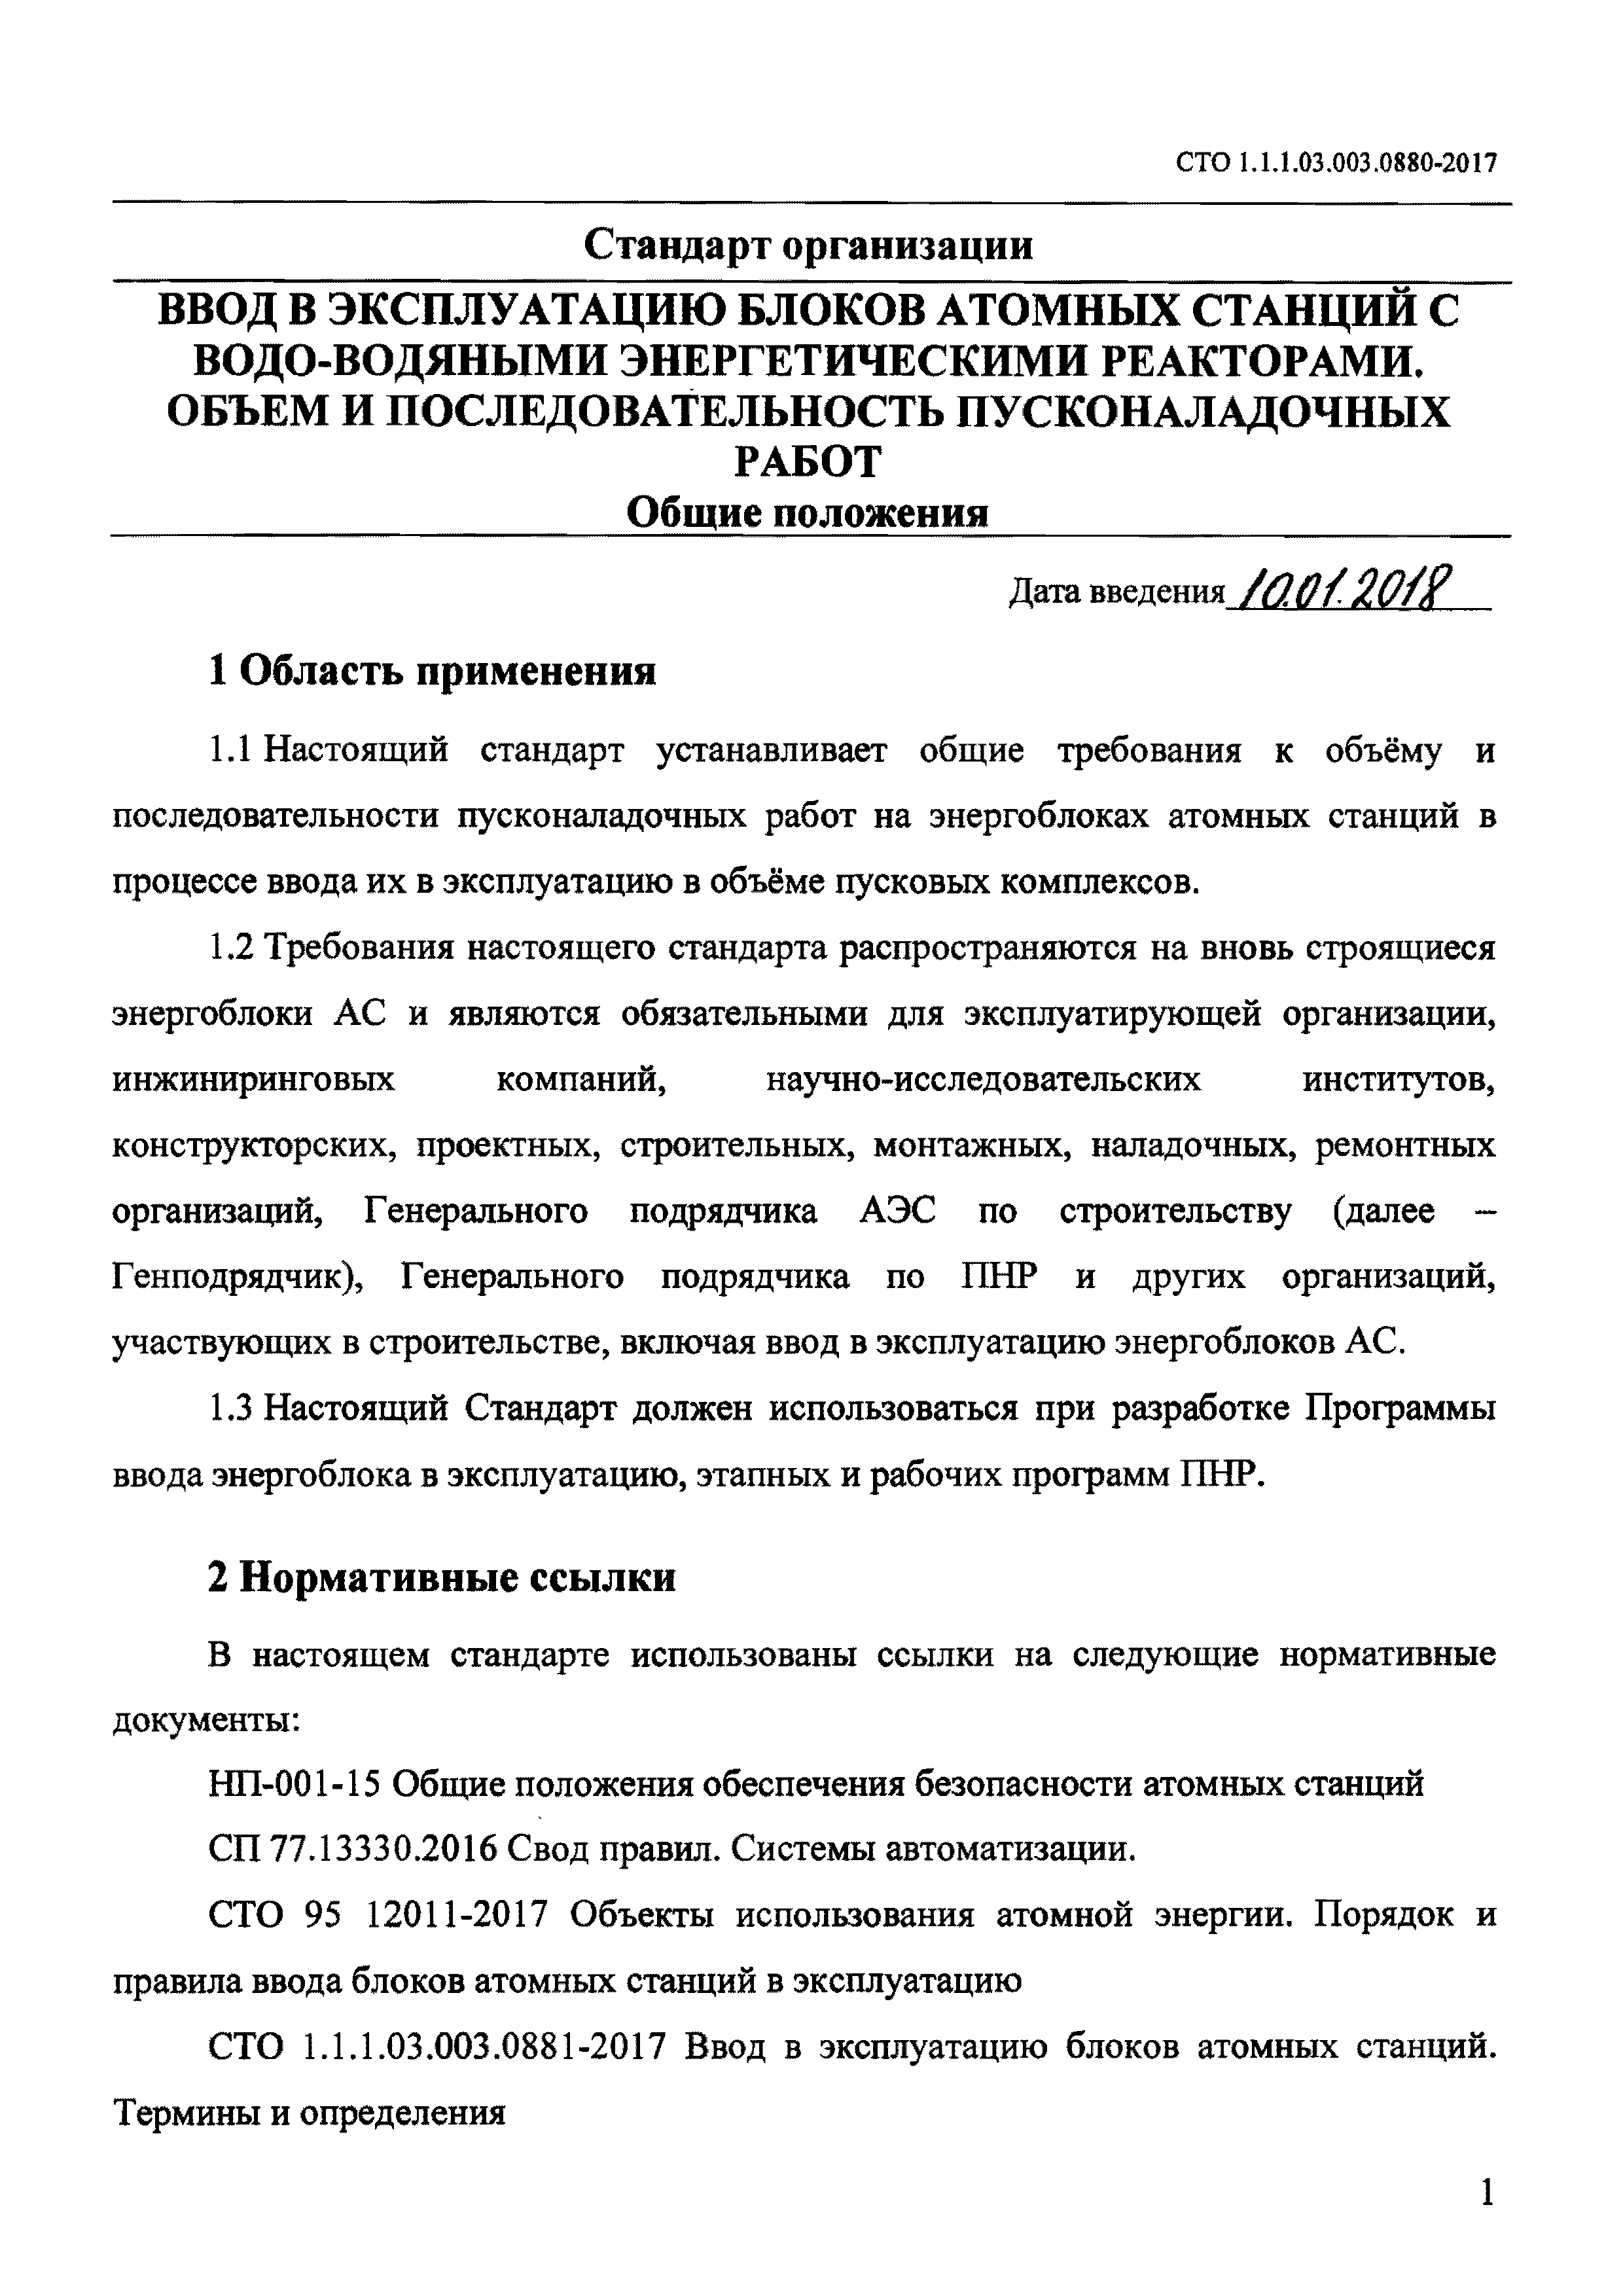 СТО 1.1.1.03.003.0880-2017